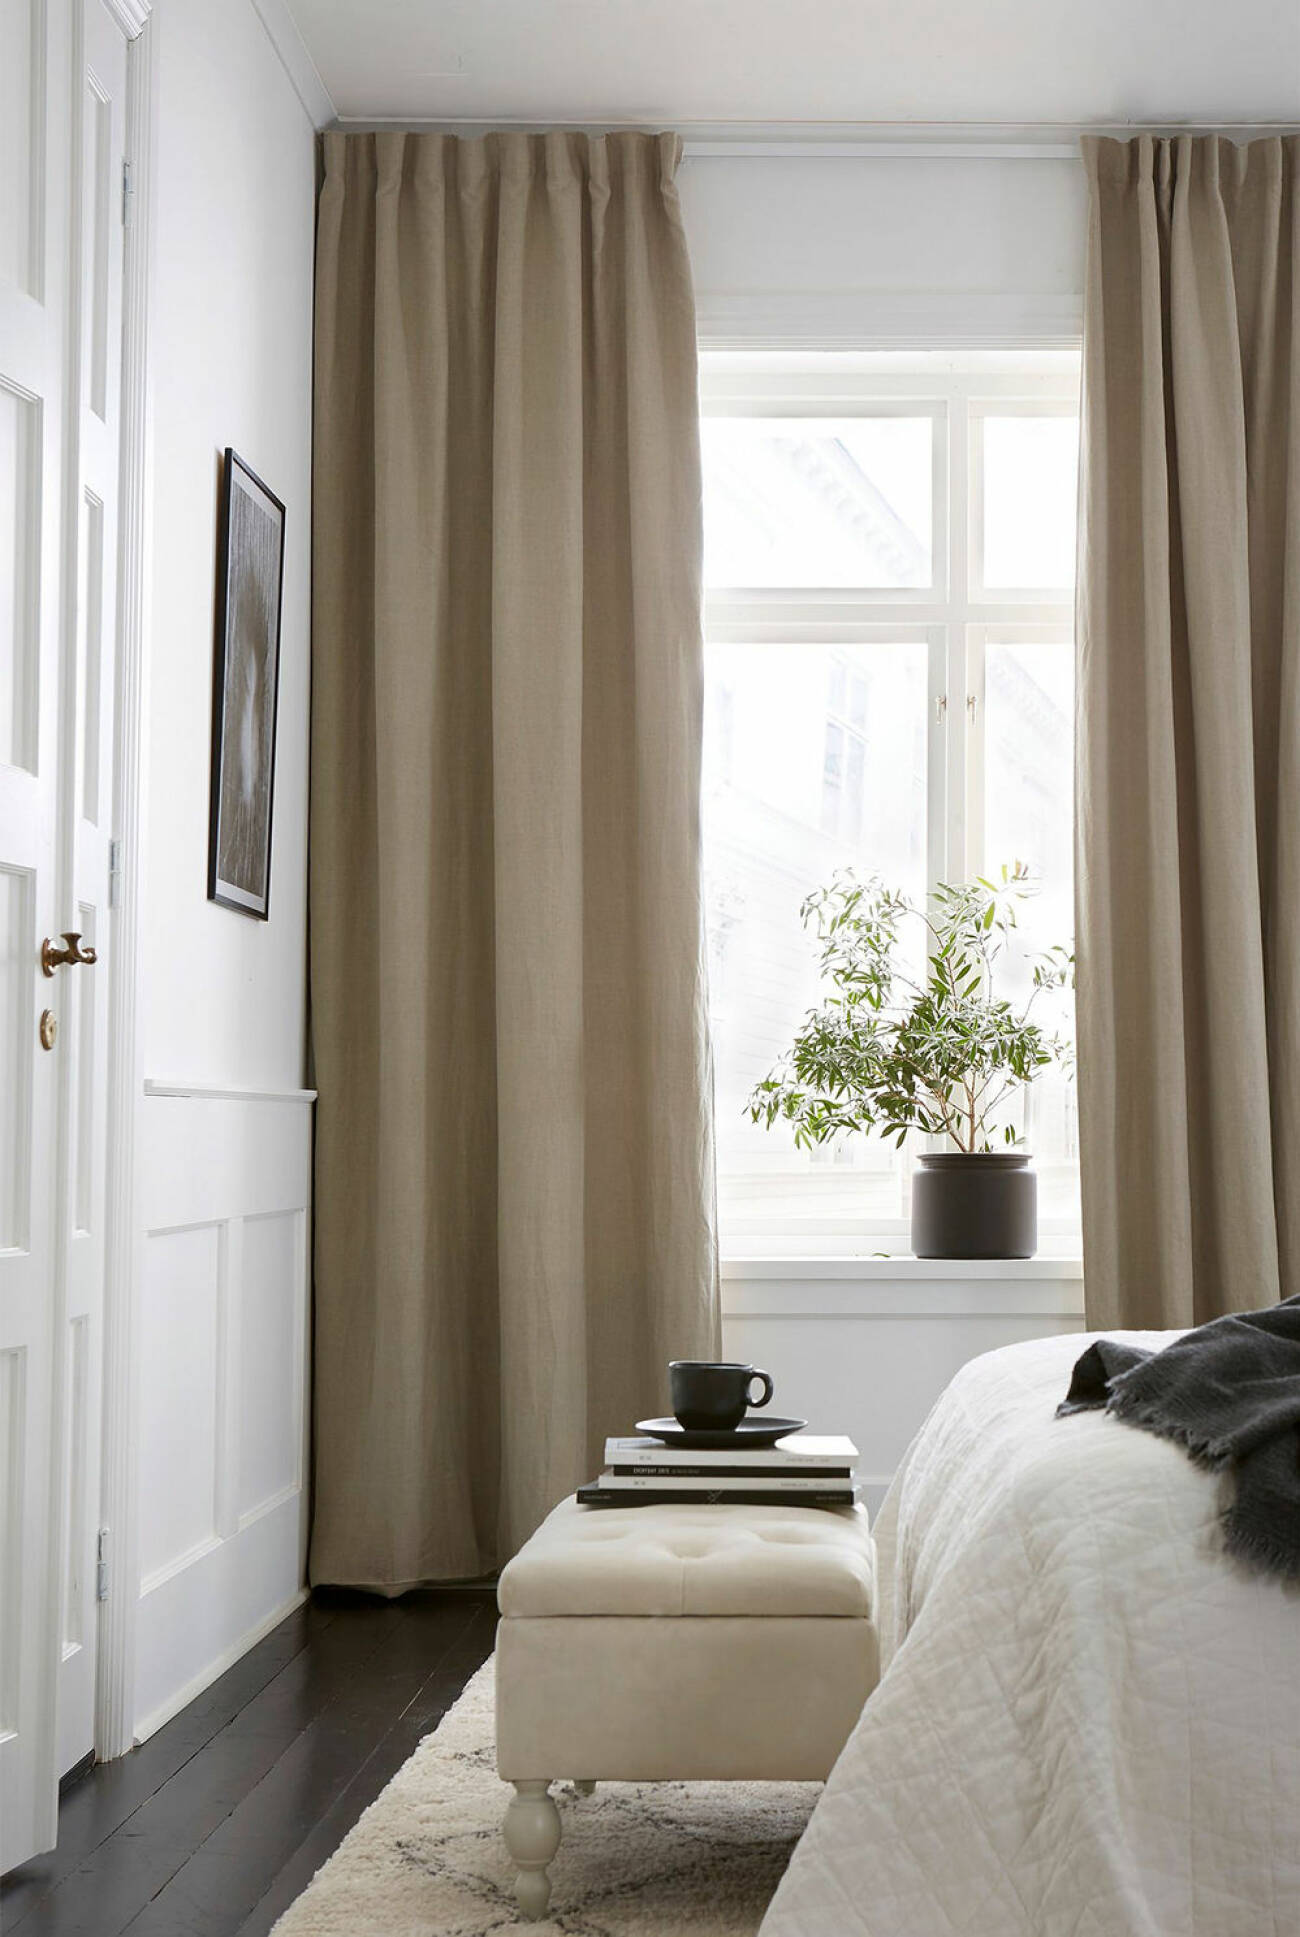 mörkläggande gardiner i tvättad linne från Ellos Home i beige nyans